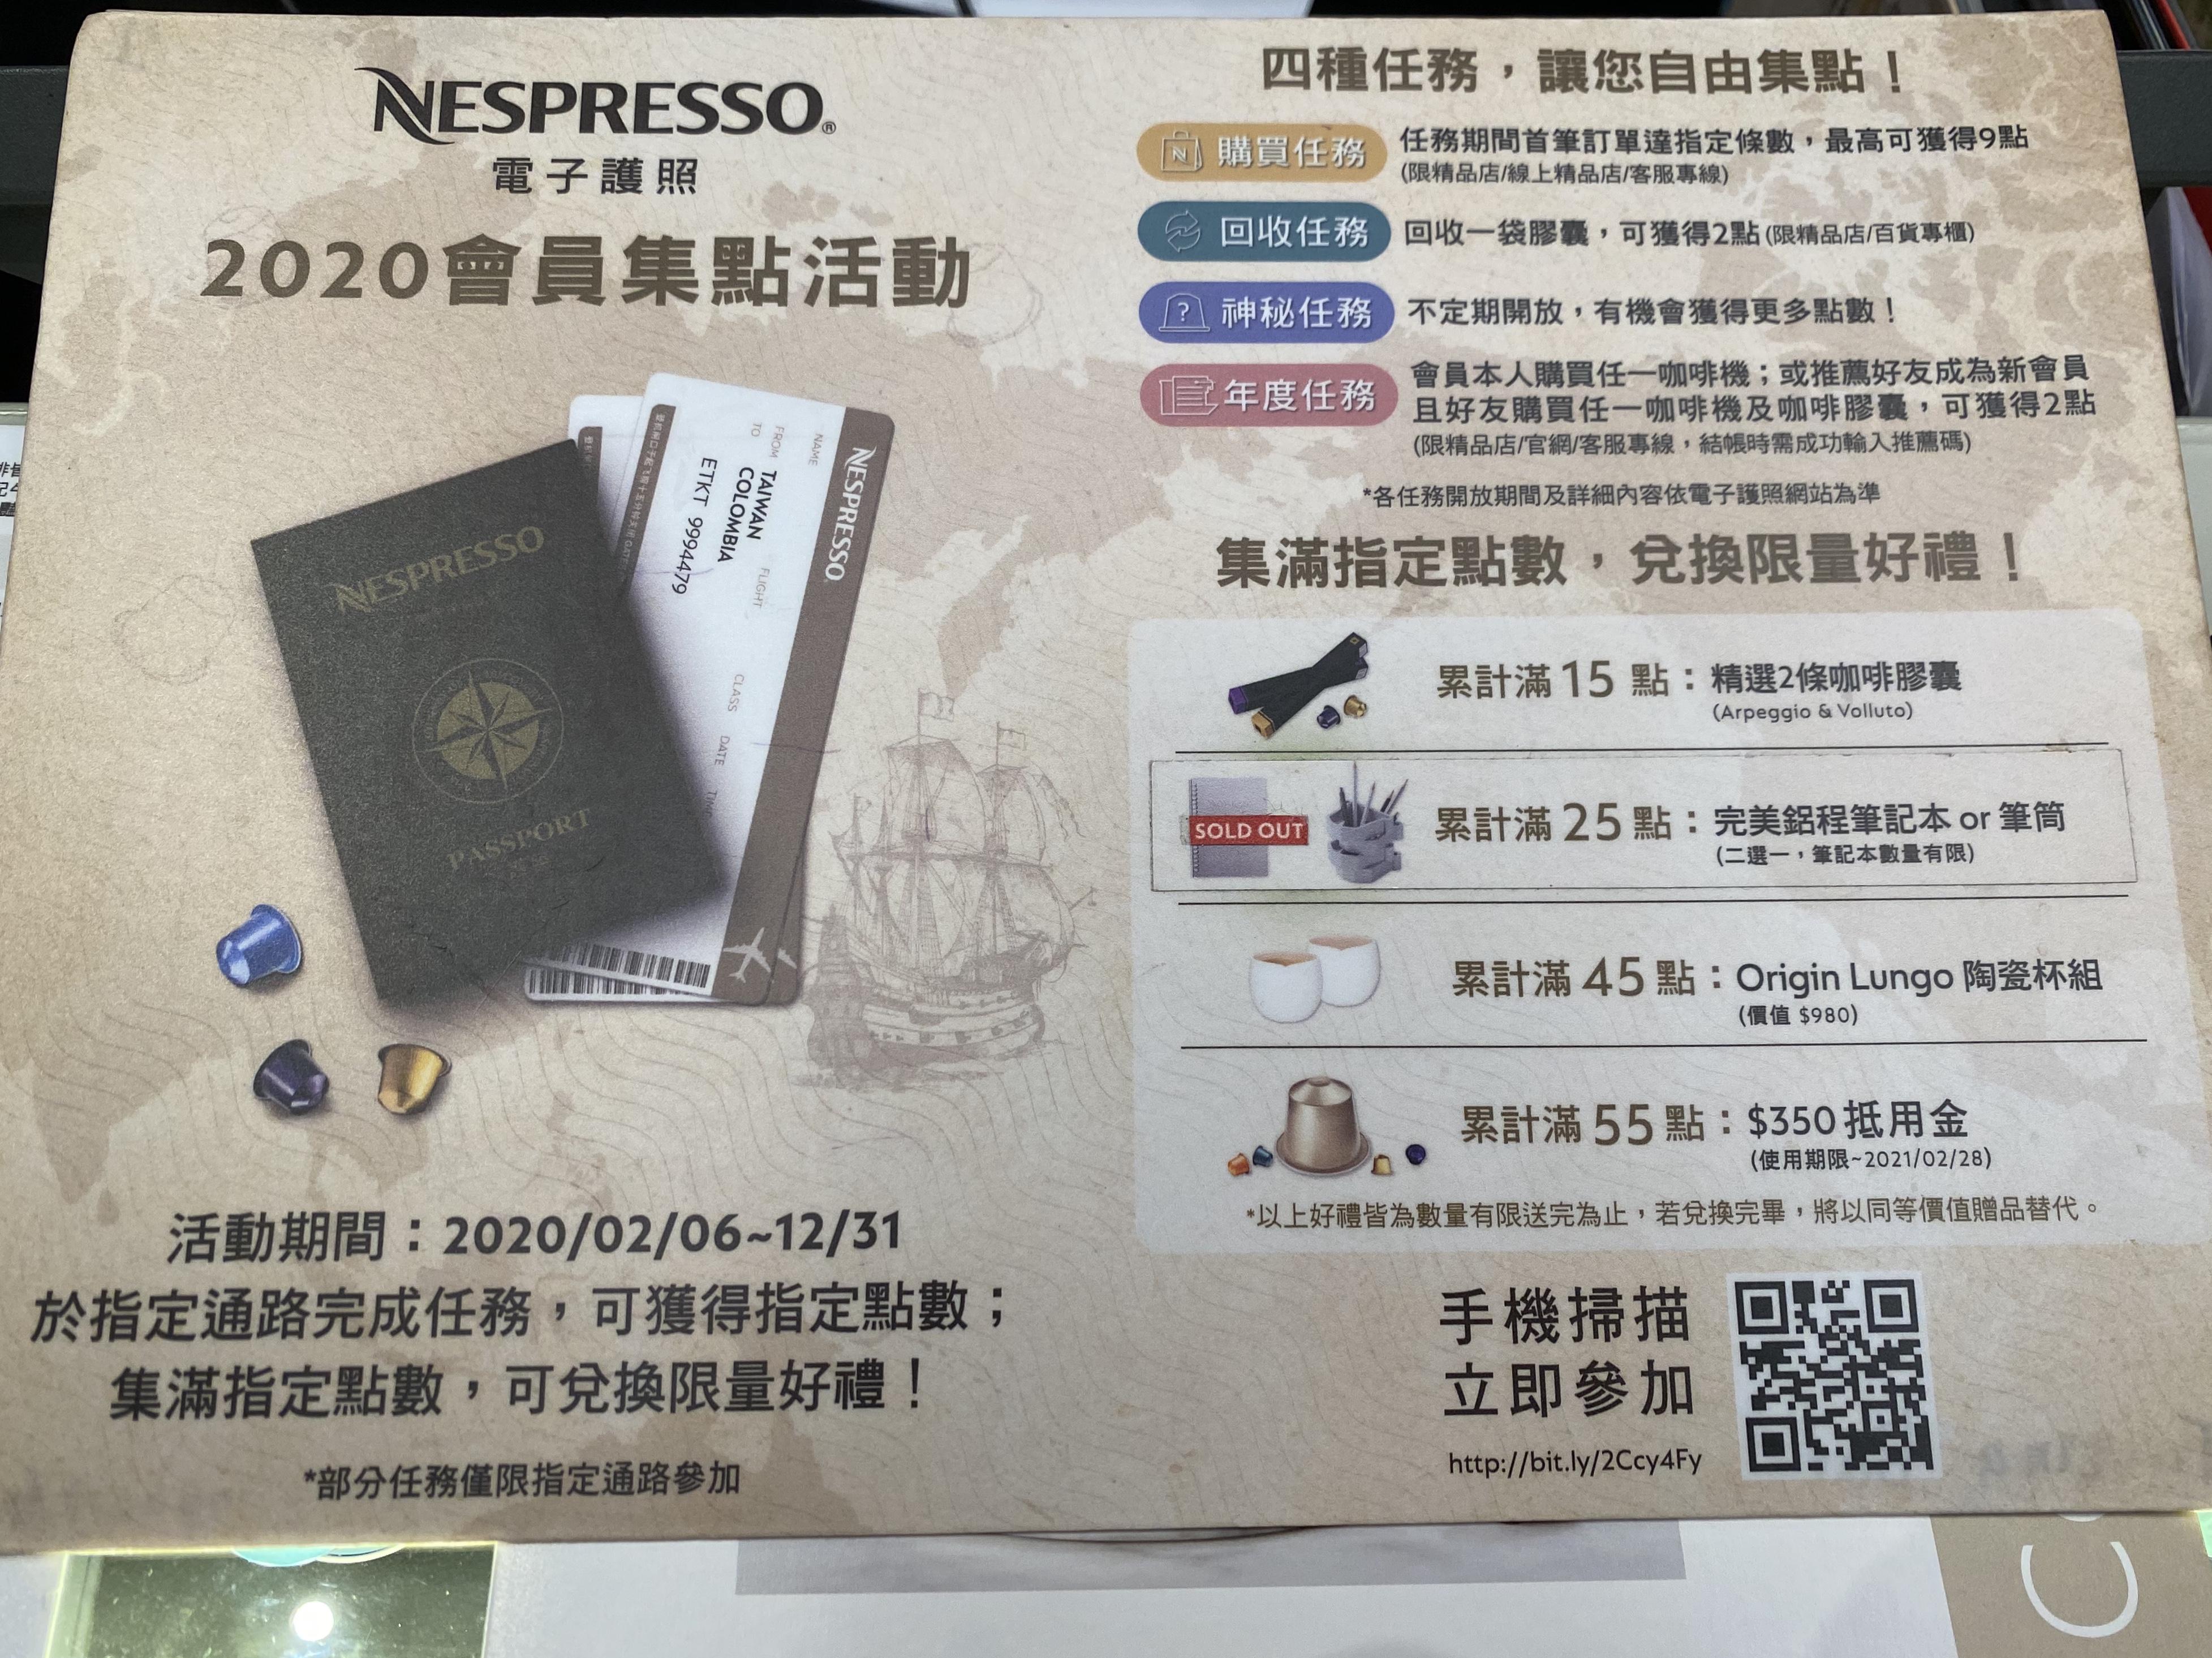 Nespresso 新光三越 台北信義新天地A11館 精品店_會員活動